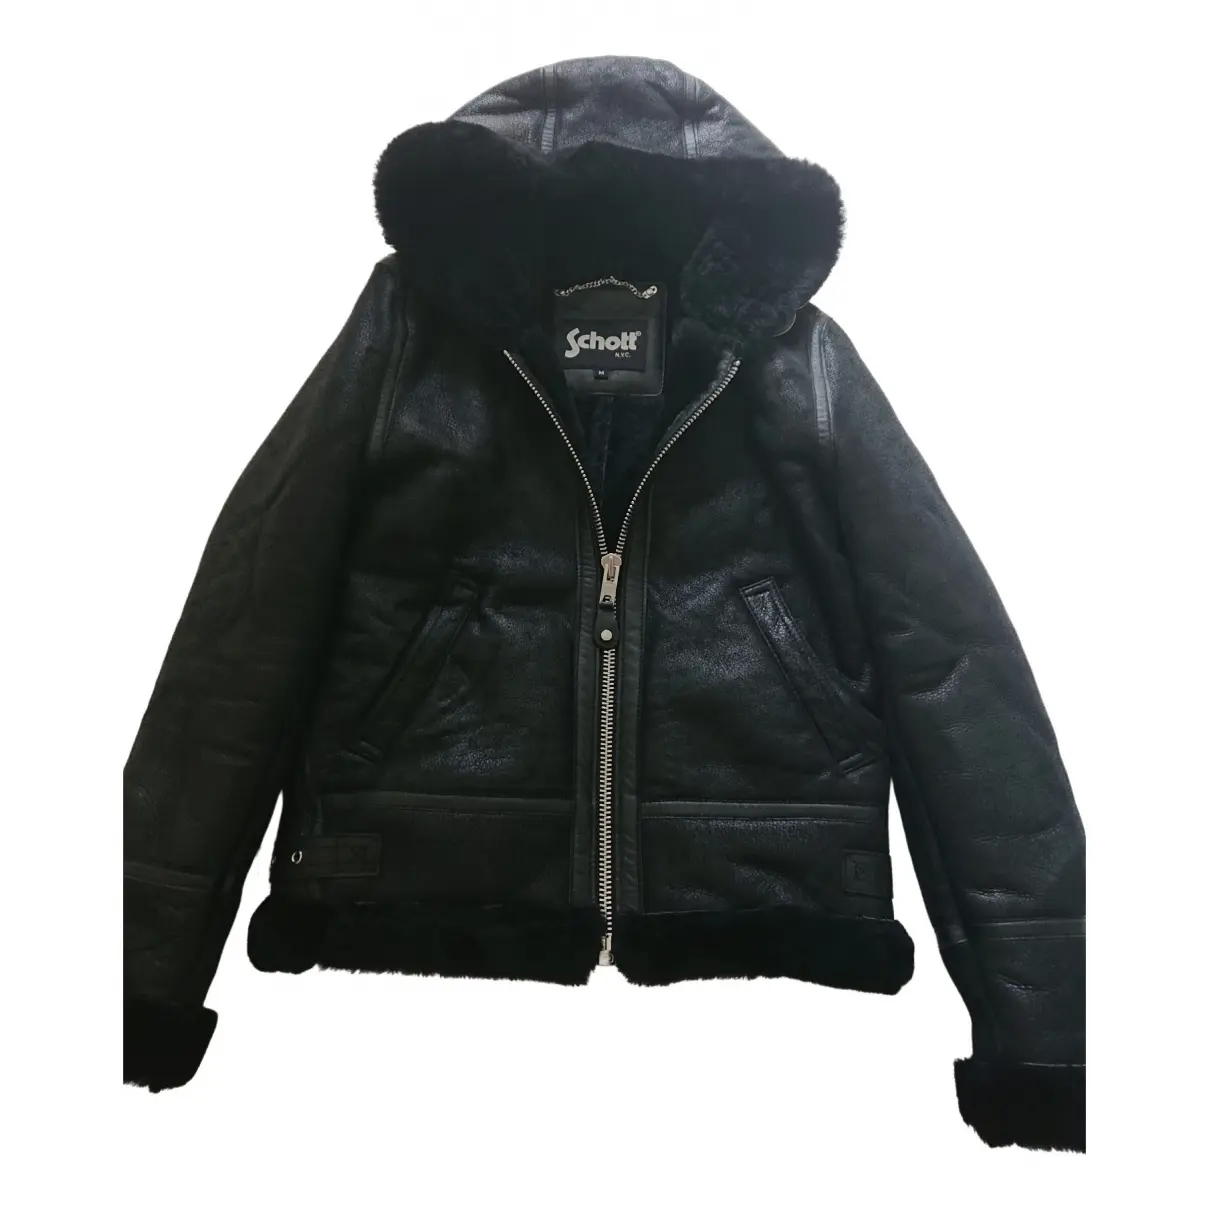 Shearling jacket Schott